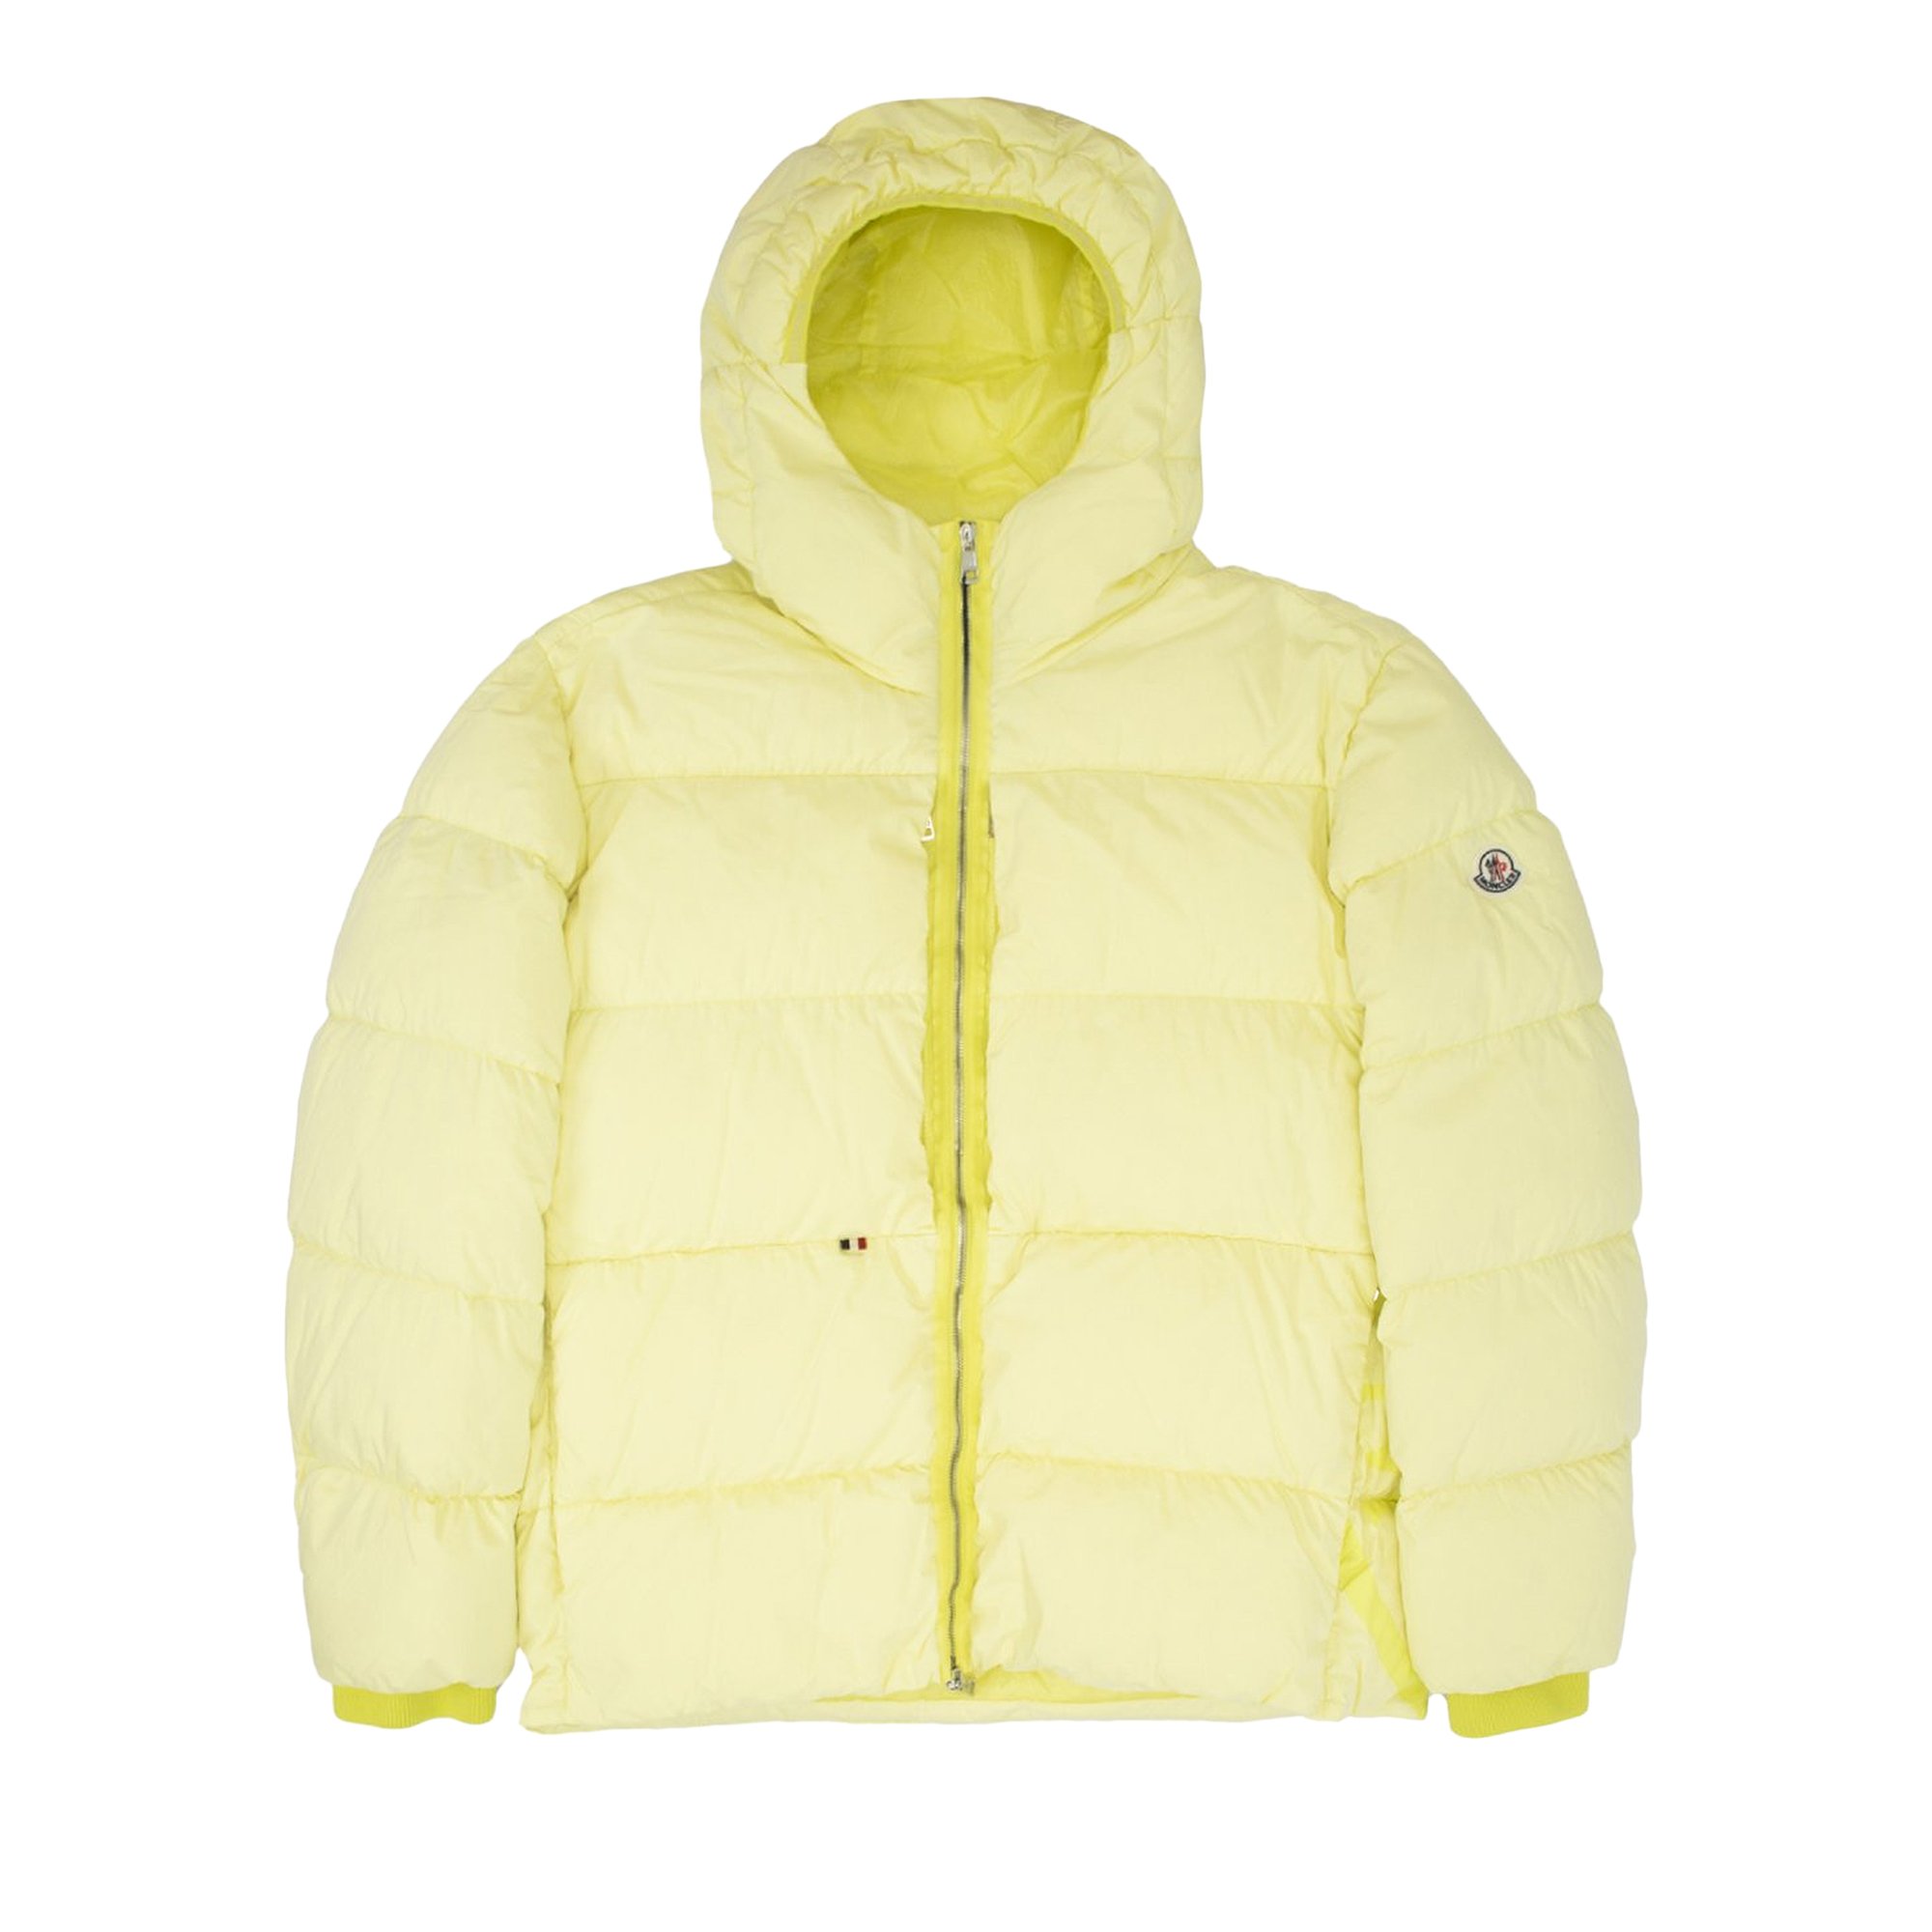 Buy Moncler Paviot Full Zip Jacket 'Yellow' - 1A000 35 595CA 112 